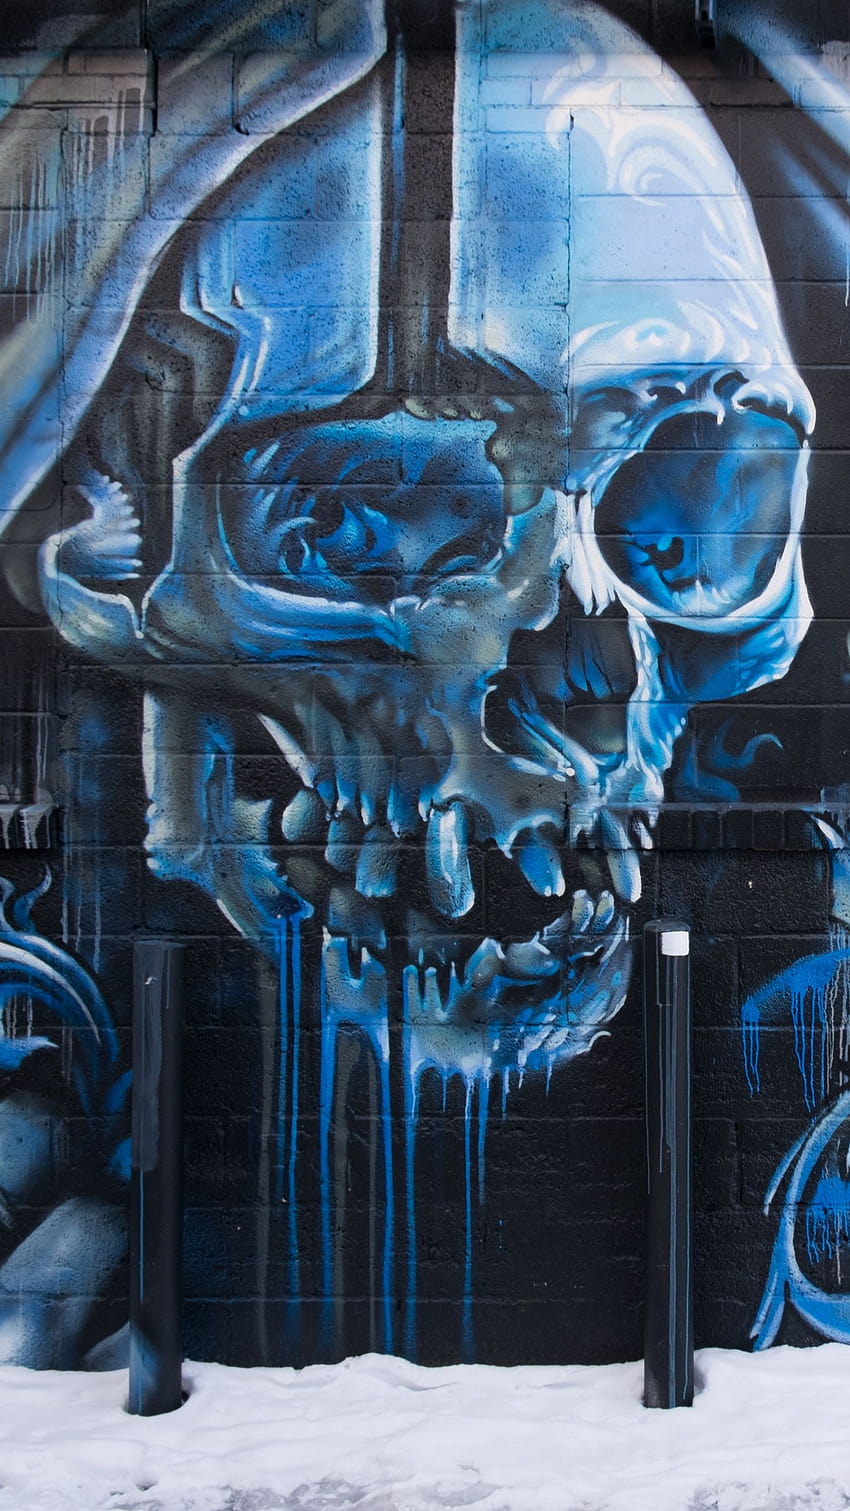 1440x2560 skull, graffiti, street art, wall q samsung galaxy s6, s7, edge, note, lg g4 backgrounds, skull graffiti HD phone wallpaper